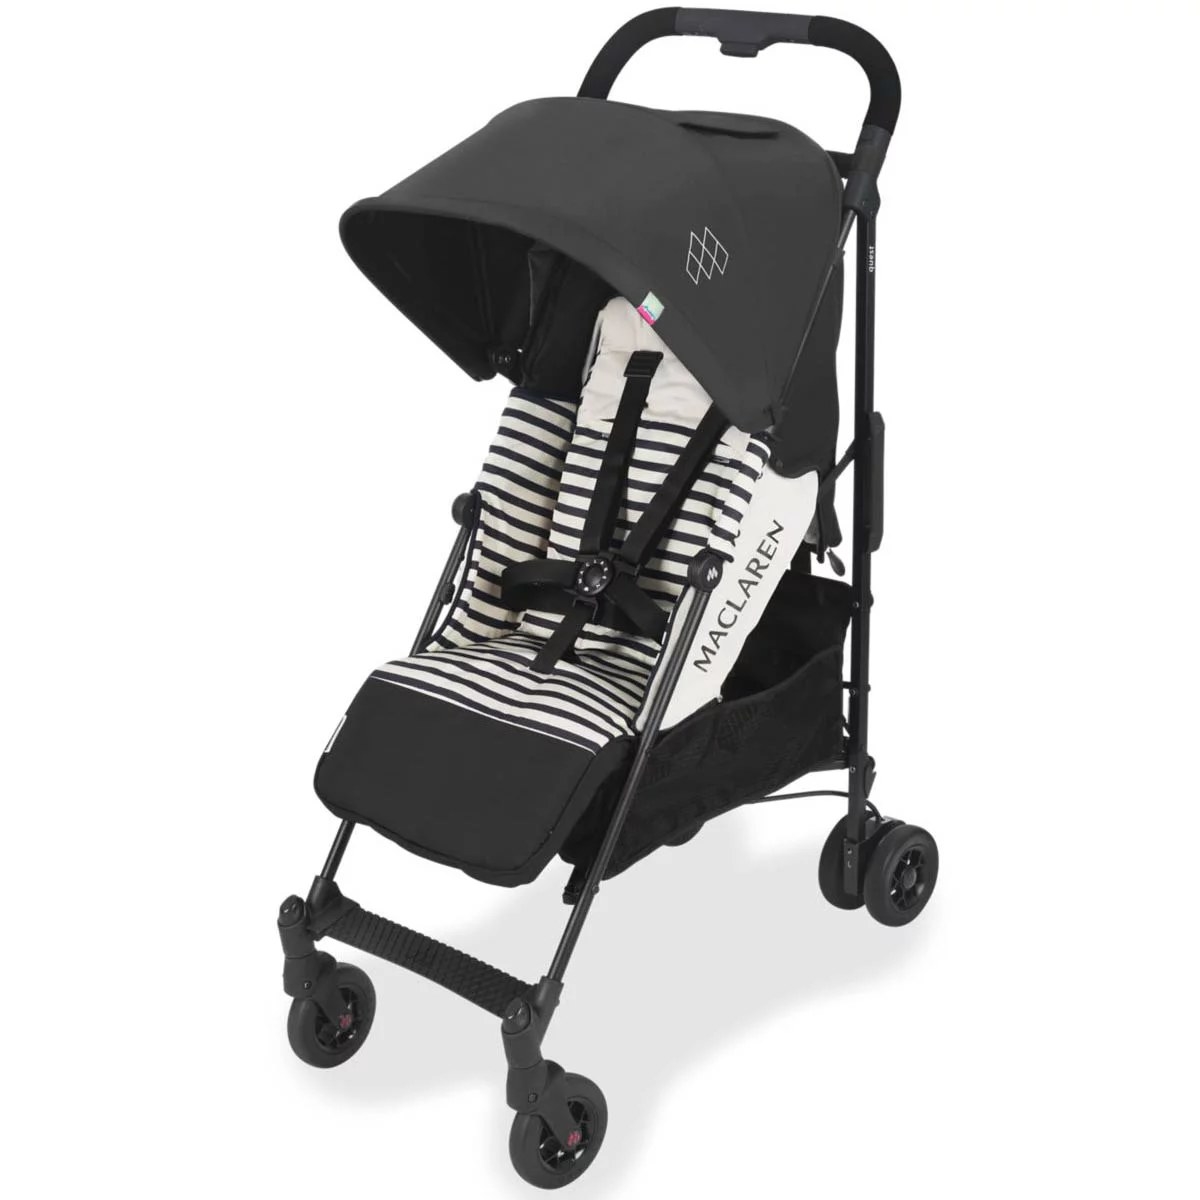 Black and white stroller